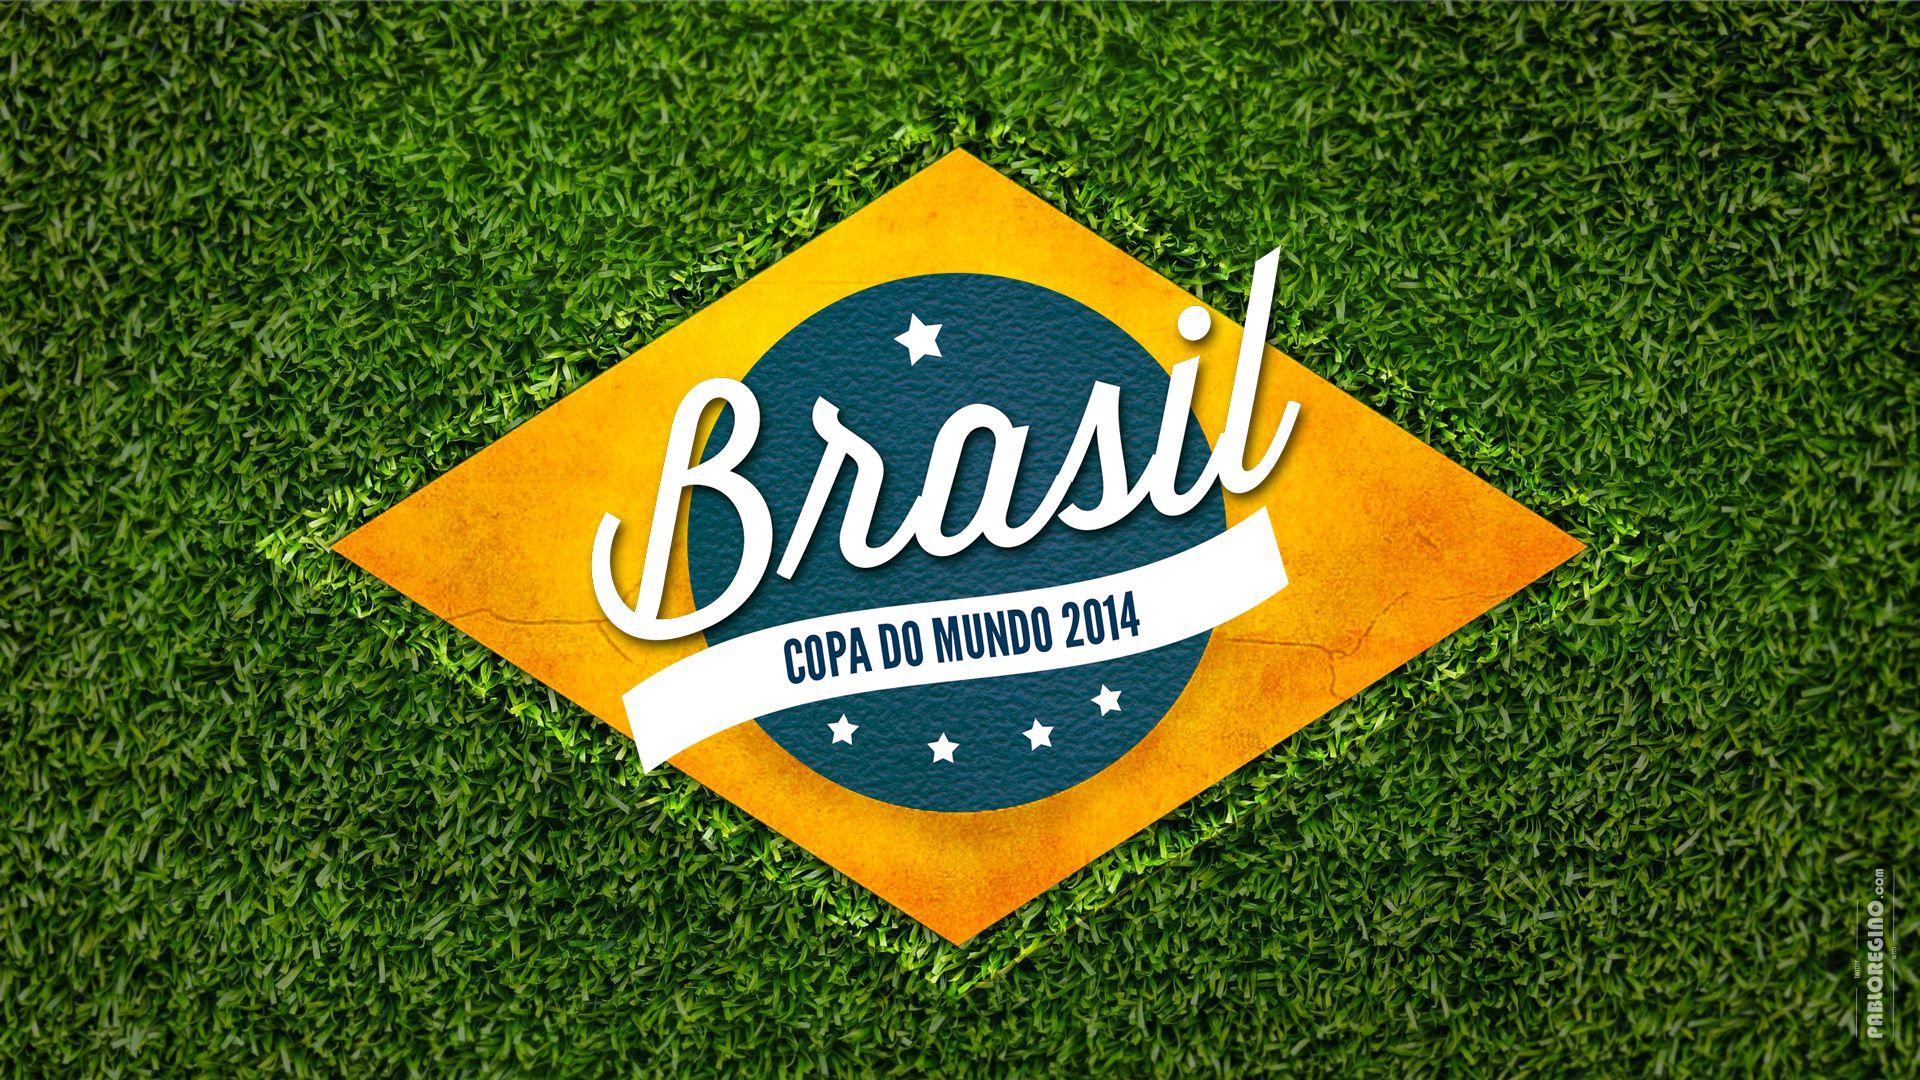 Fifa World Cup 2014 Brazil Full HD Wallpaper